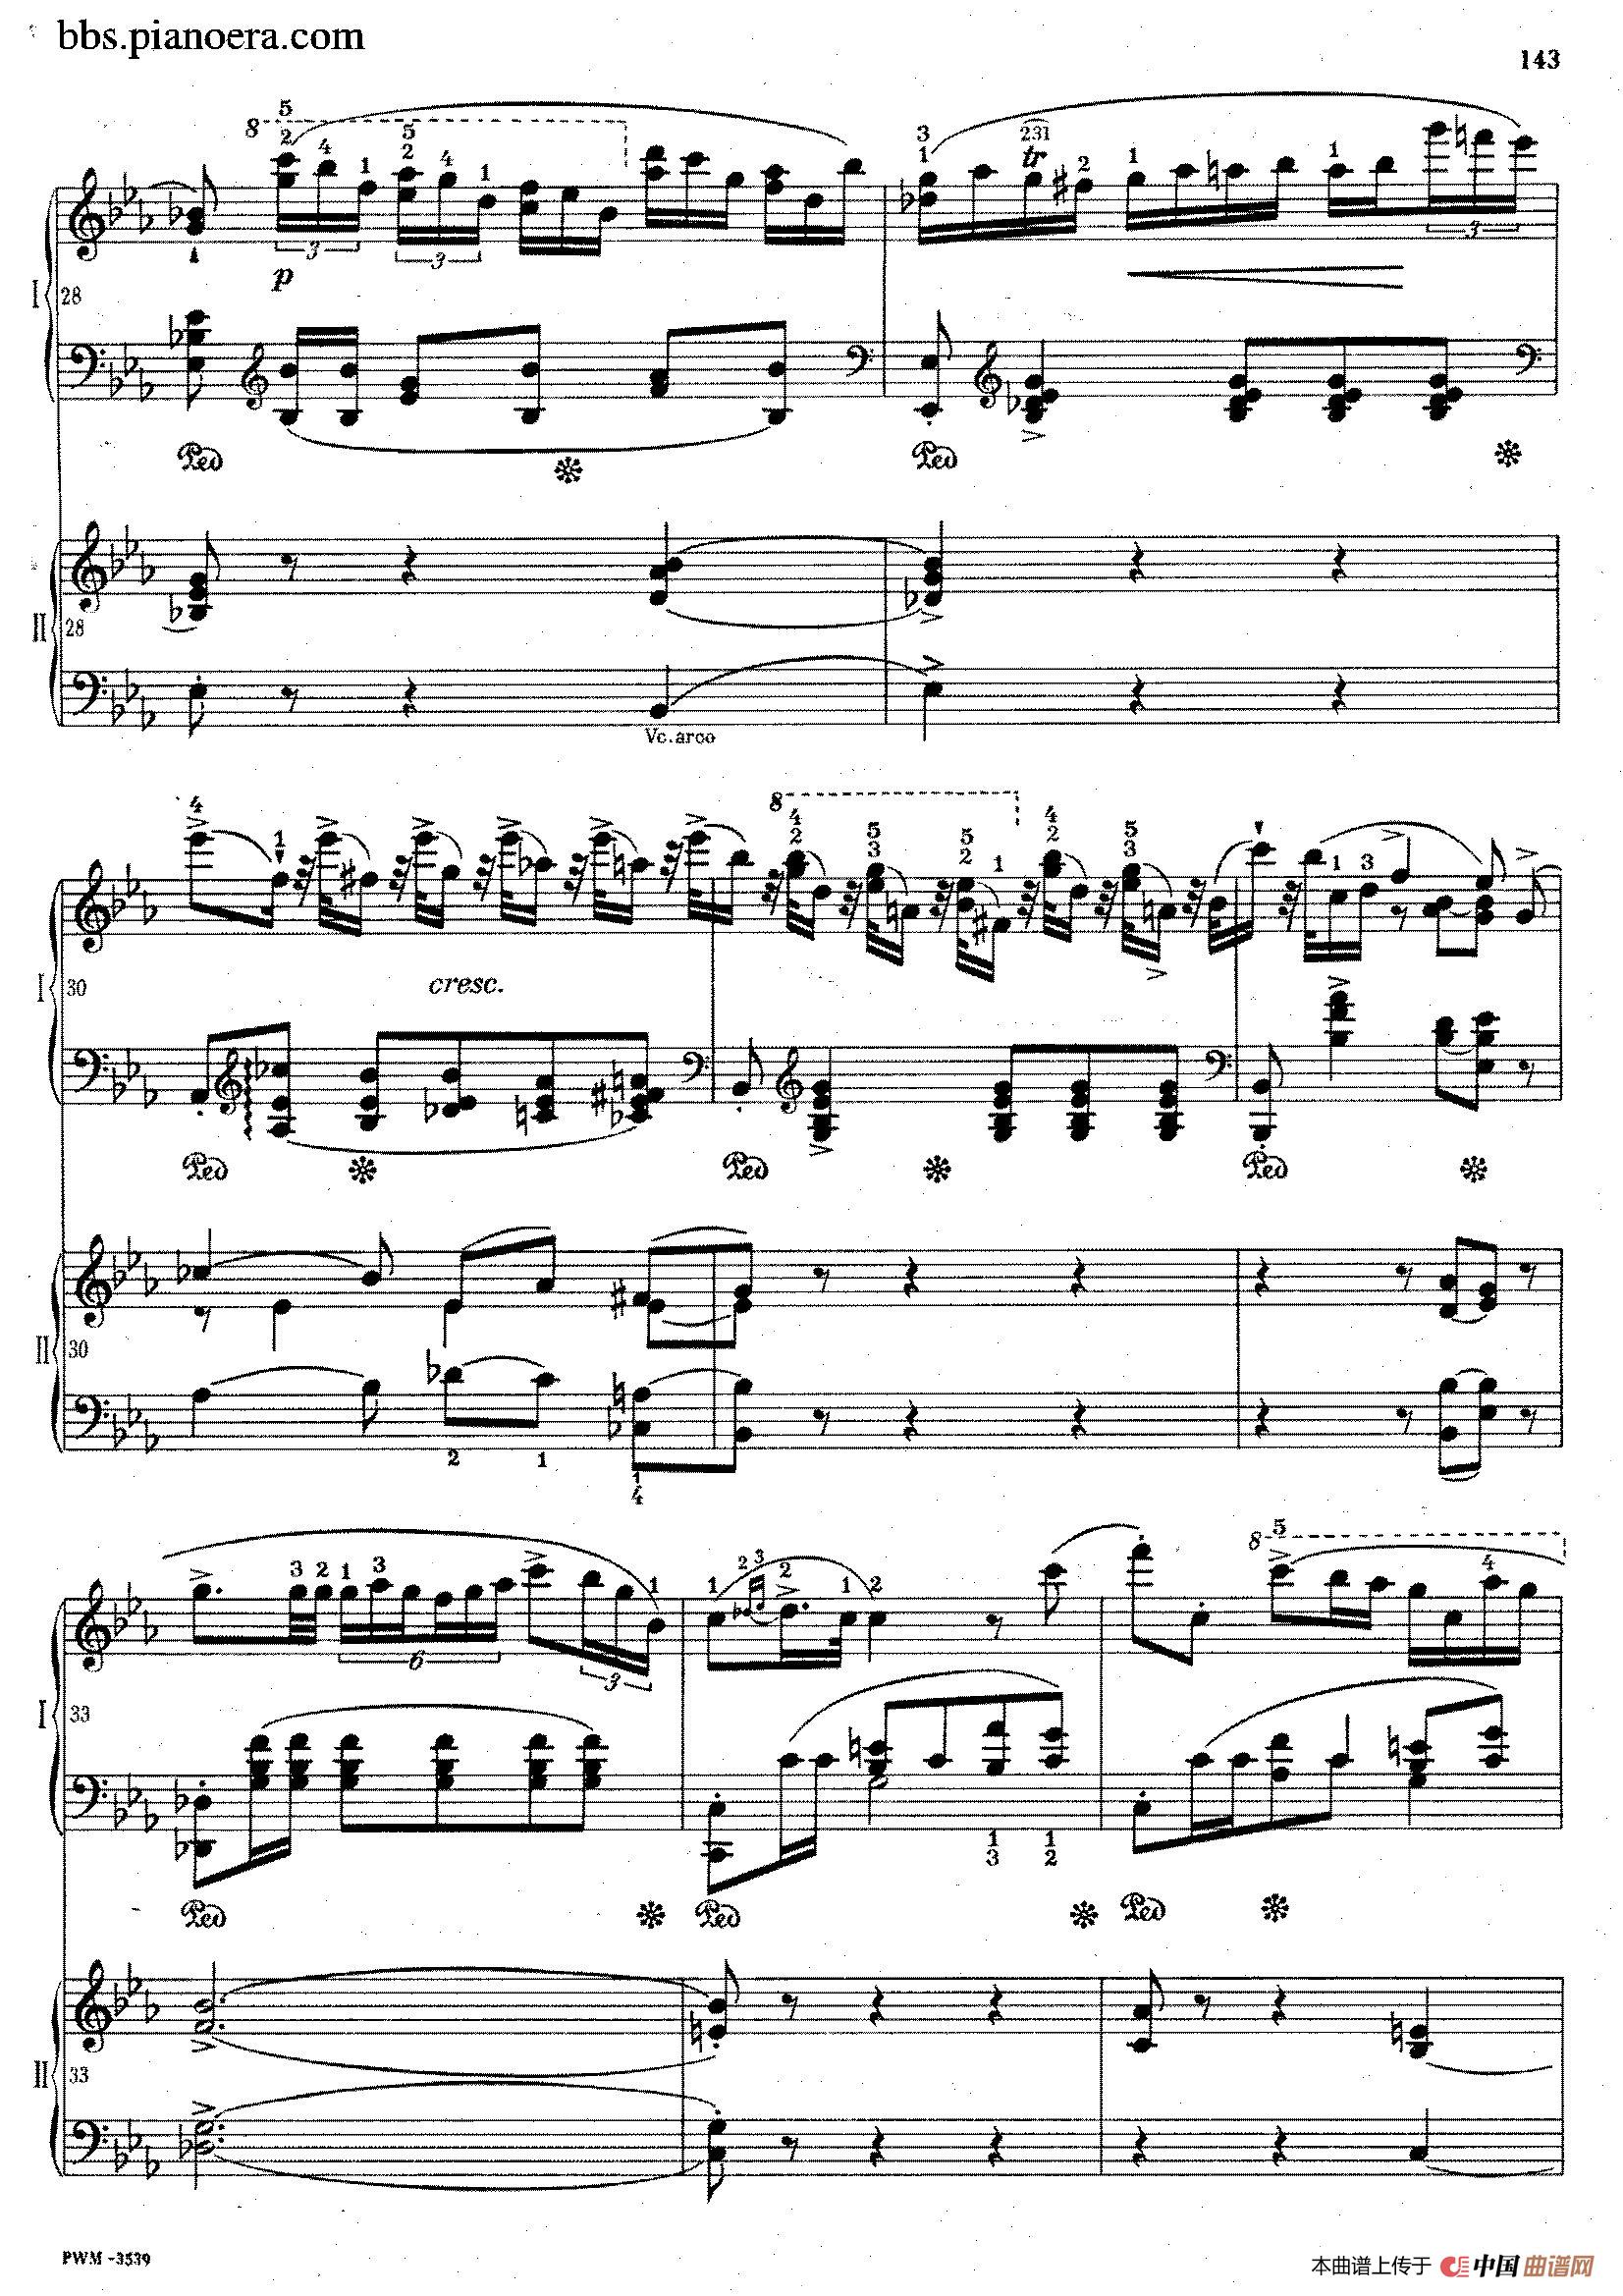 二十二简谱_夜的钢琴曲二十二简谱(3)